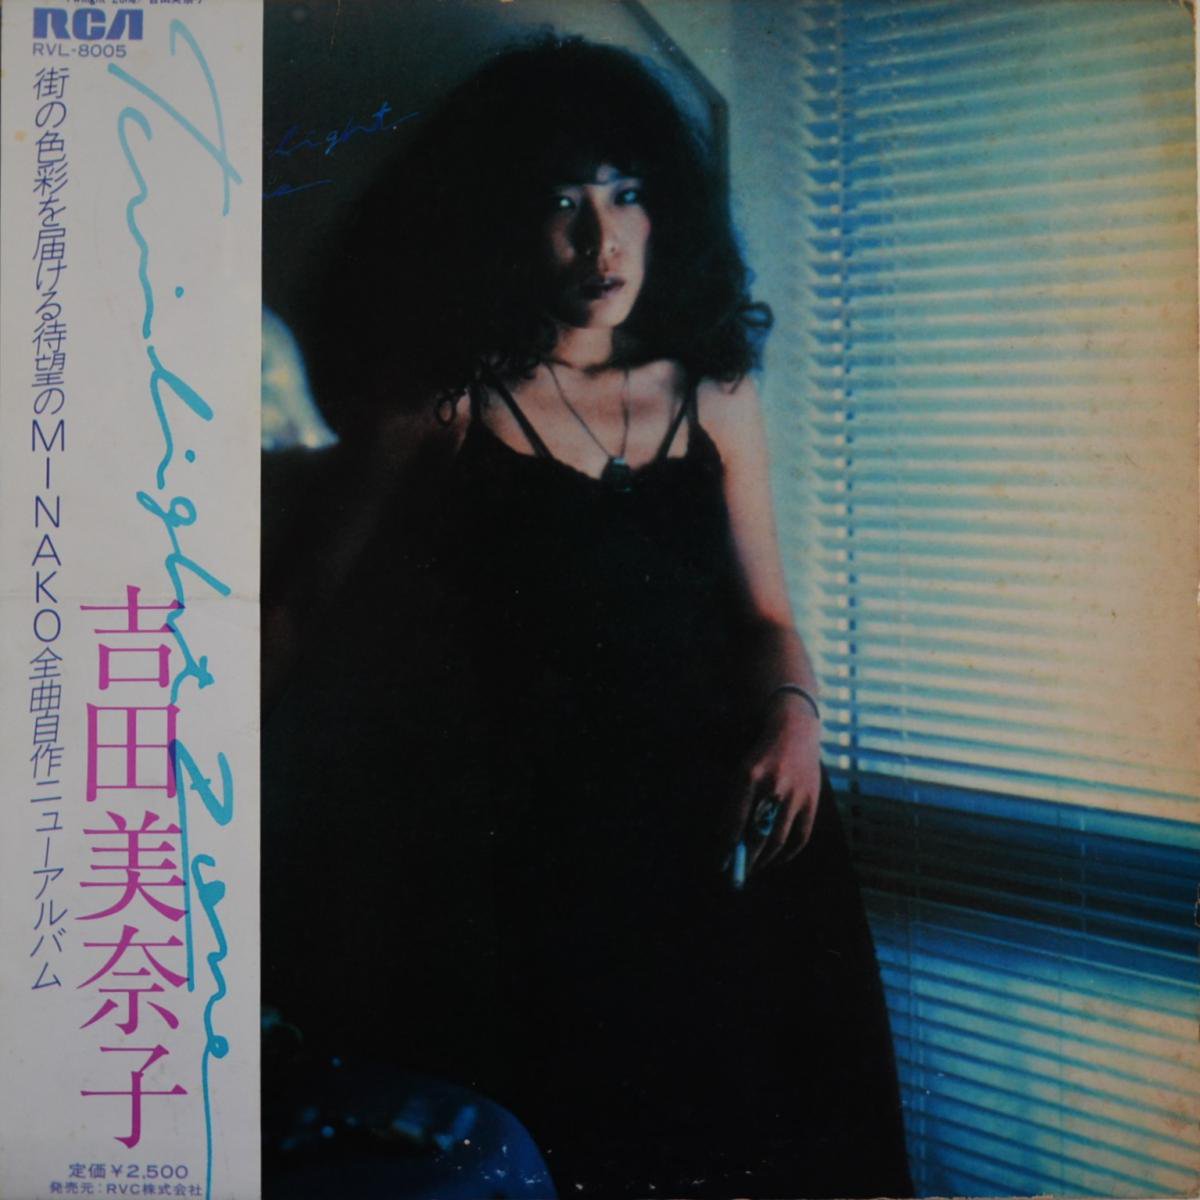 吉田美奈子 MINAKO YOSHIDA / トワイライト・ゾーン TWILIGHT ZONE (LP)